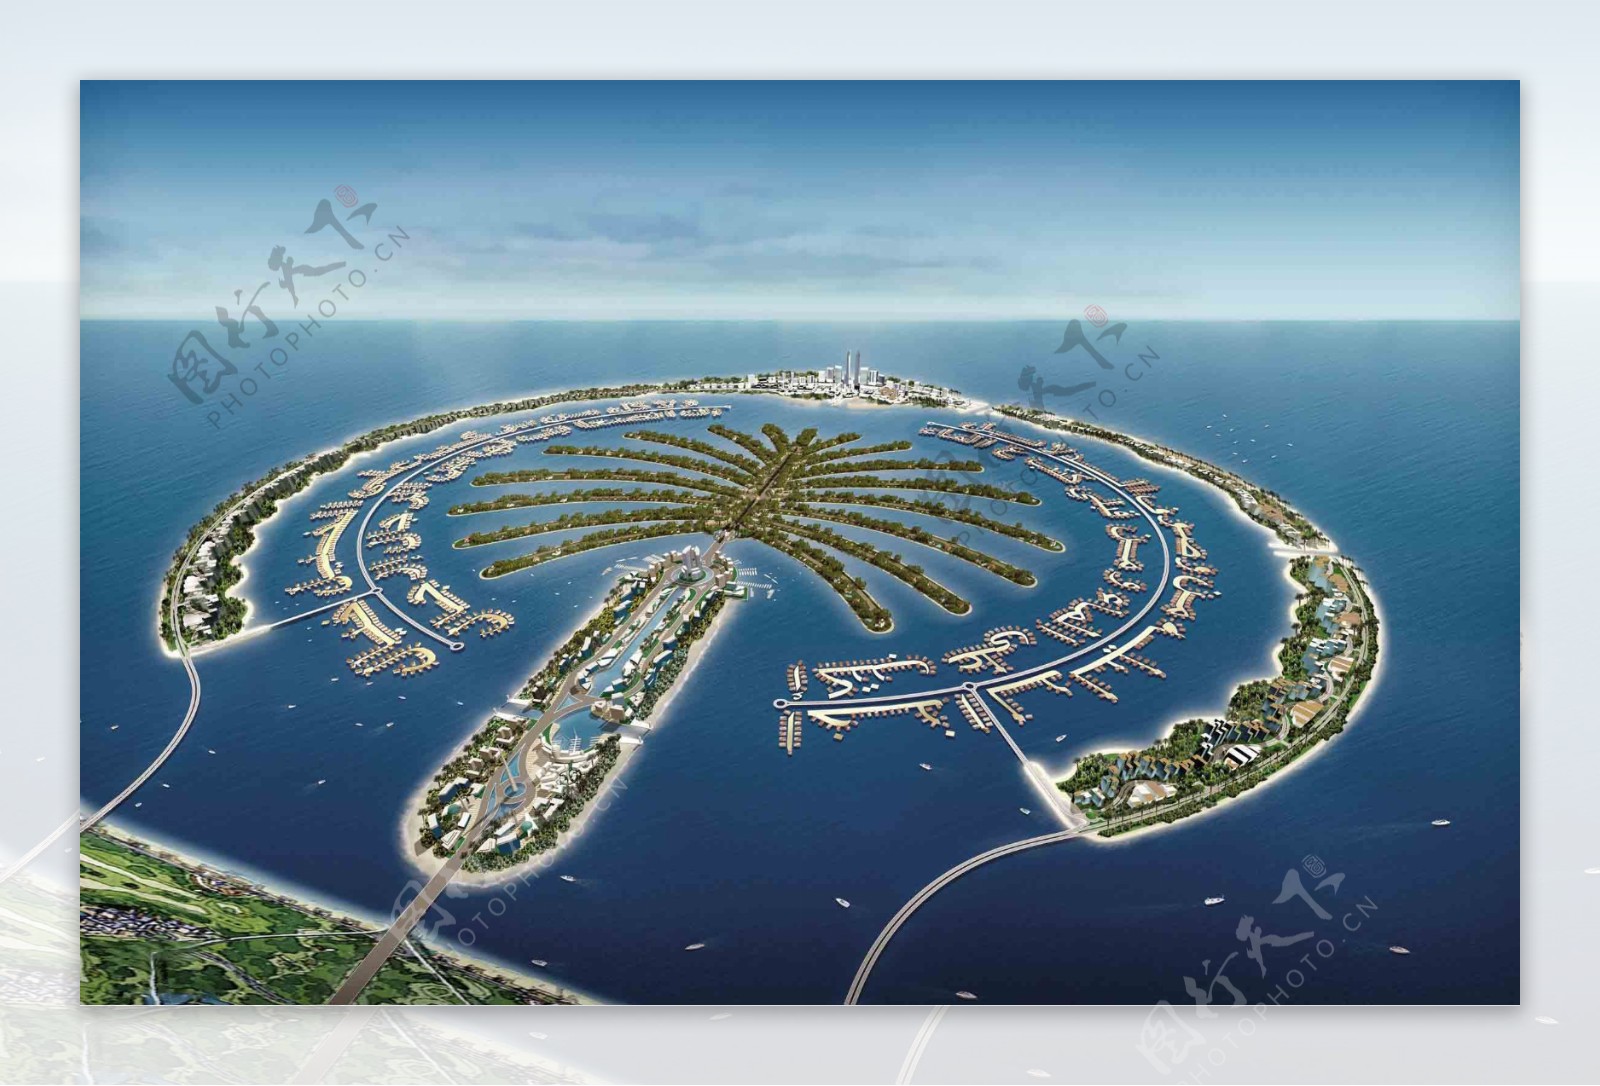 【携程攻略】迪拜朱美拉棕榈岛景点,朱美拉棕榈岛是迪拜土豪花巨资建起来的，棕榈岛上景色优美，空气宜人…